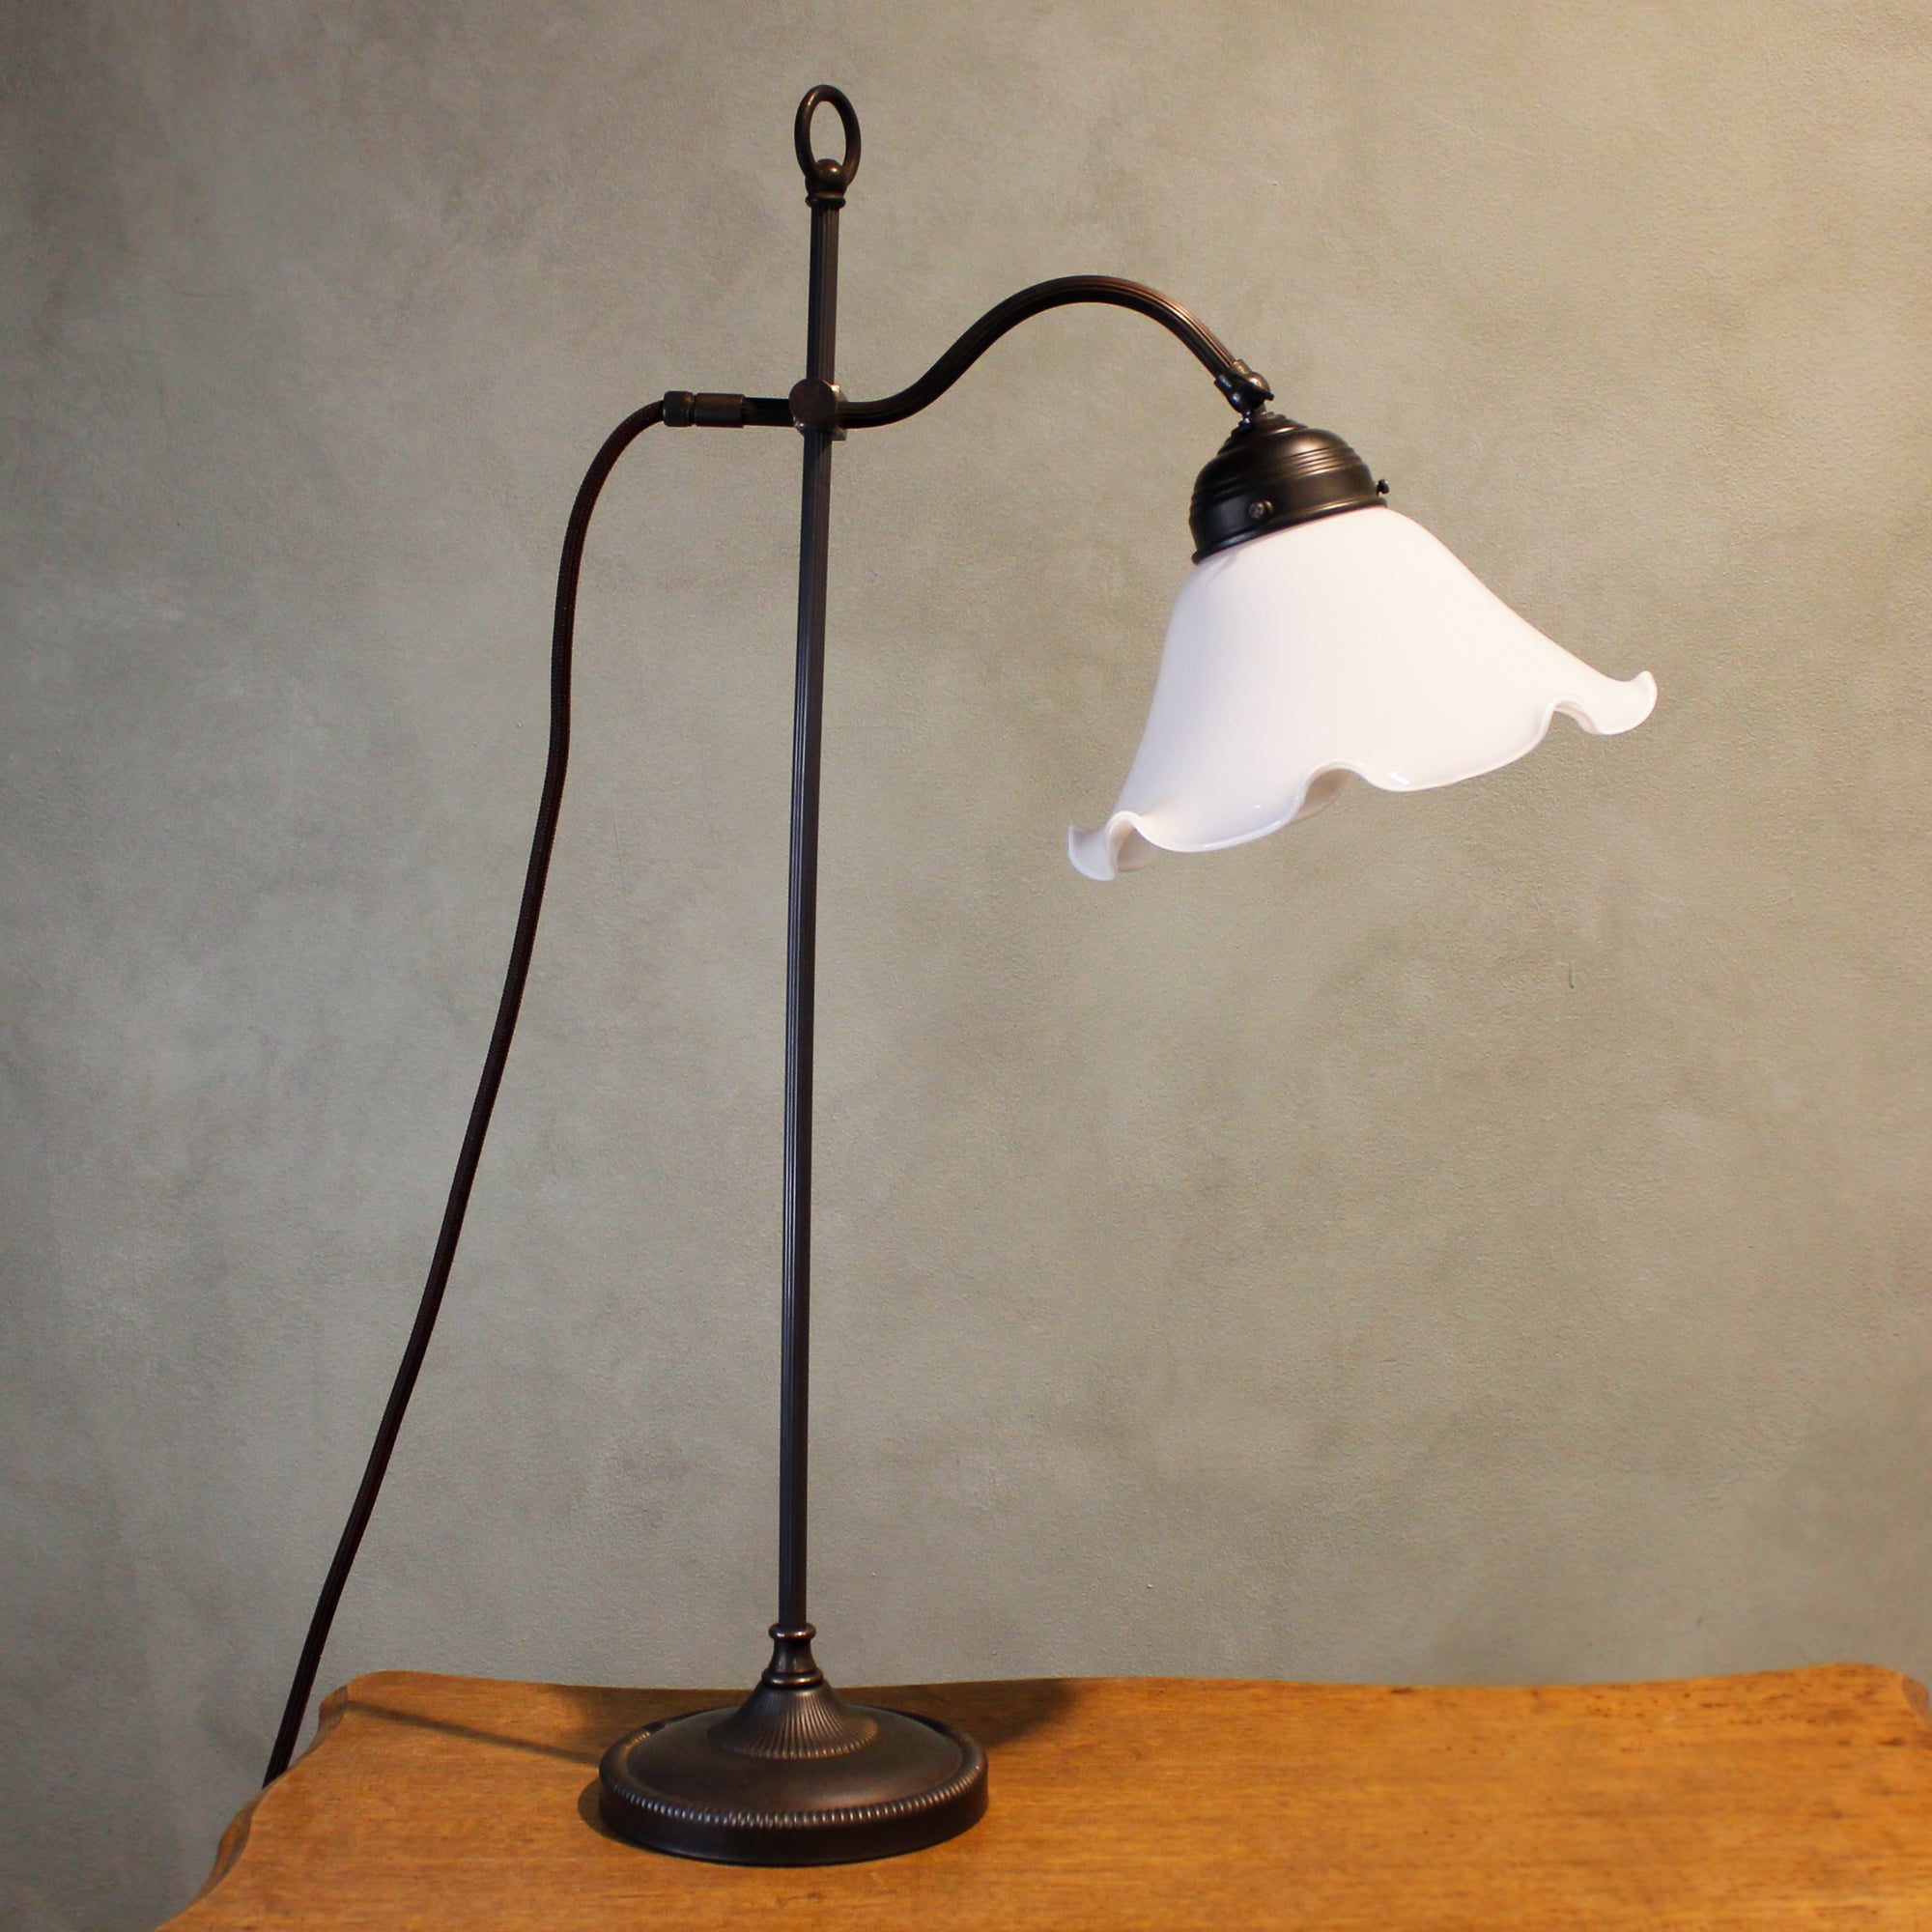 Art Nouveau Table Lamp "Black"